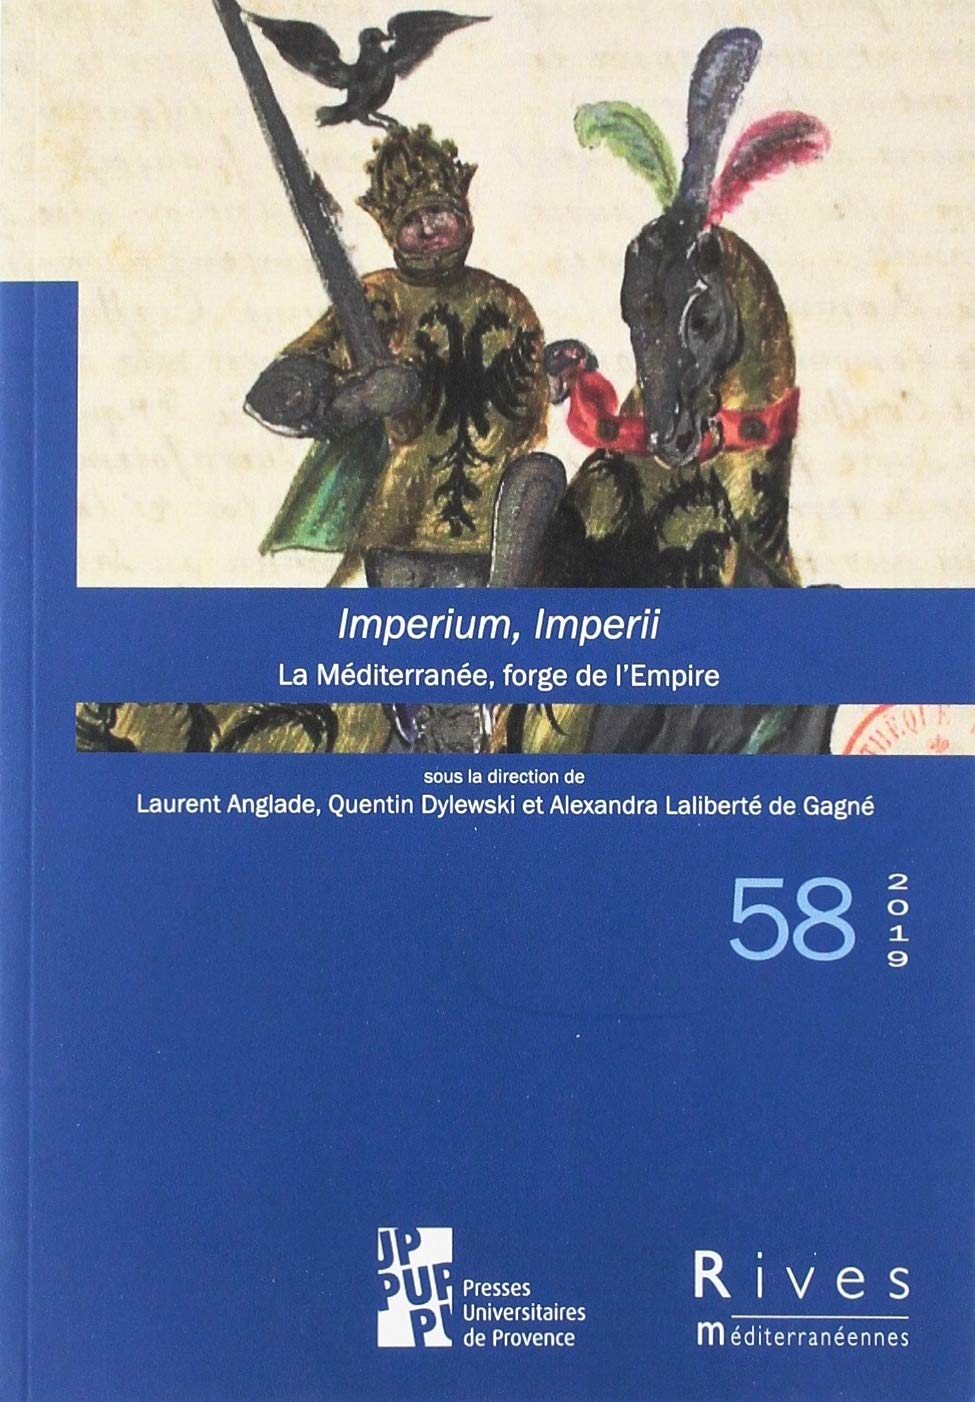 Imperium, Imperii. La Mediterranee, forge de l'Empire, (Revue Rives méditerranéennes 58), 2019, 188 p.